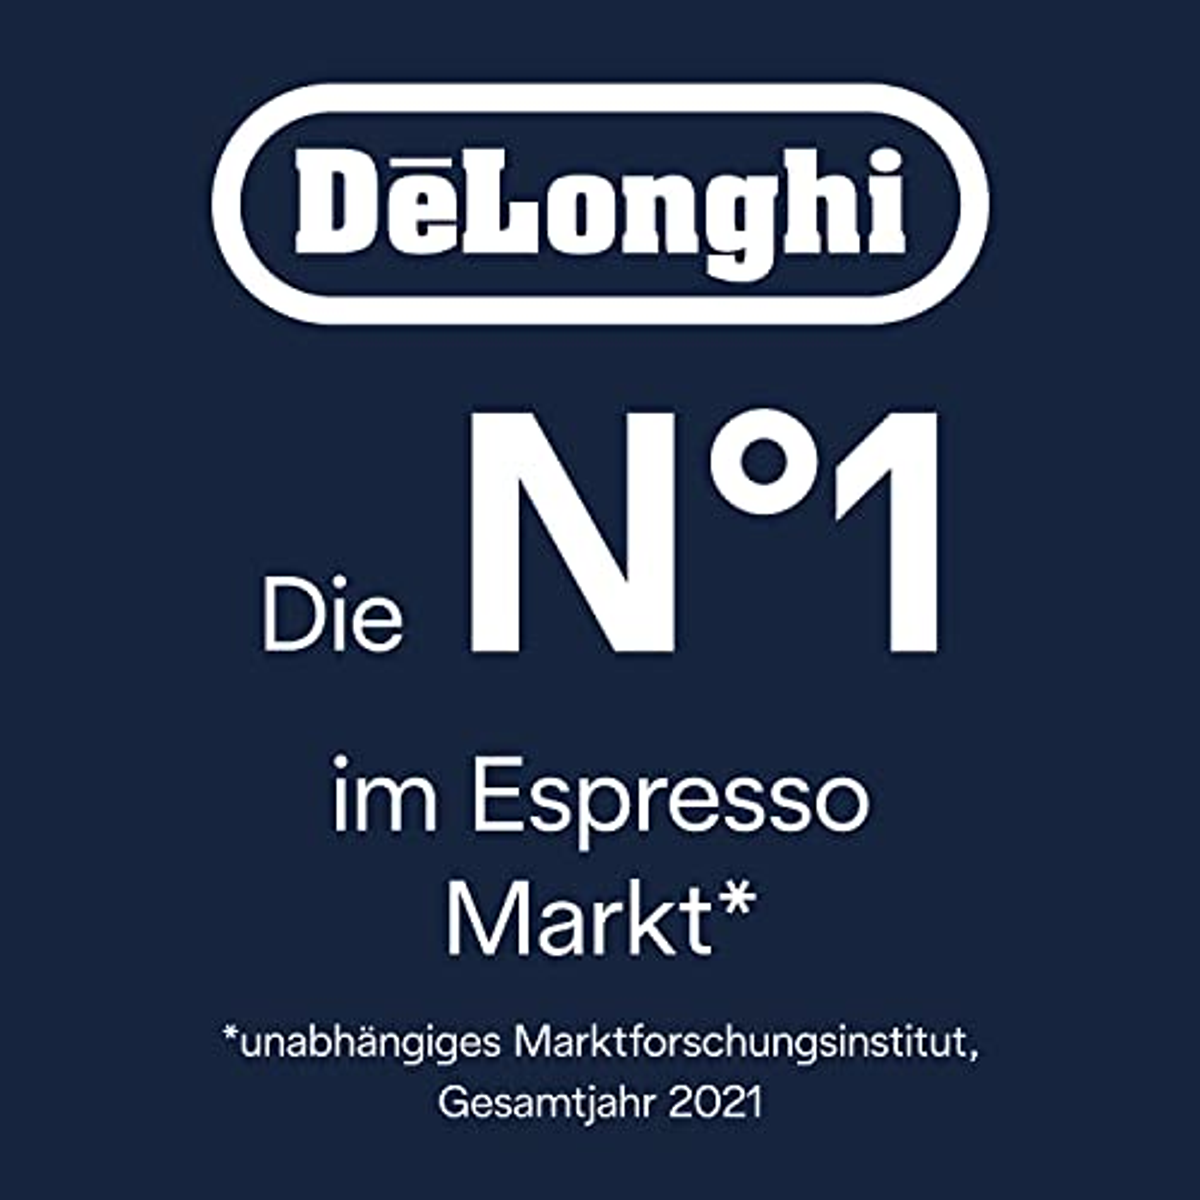 DE LONGHI EC 9155 La weiß Arte Espresso-Siebträgerautomat Specialista